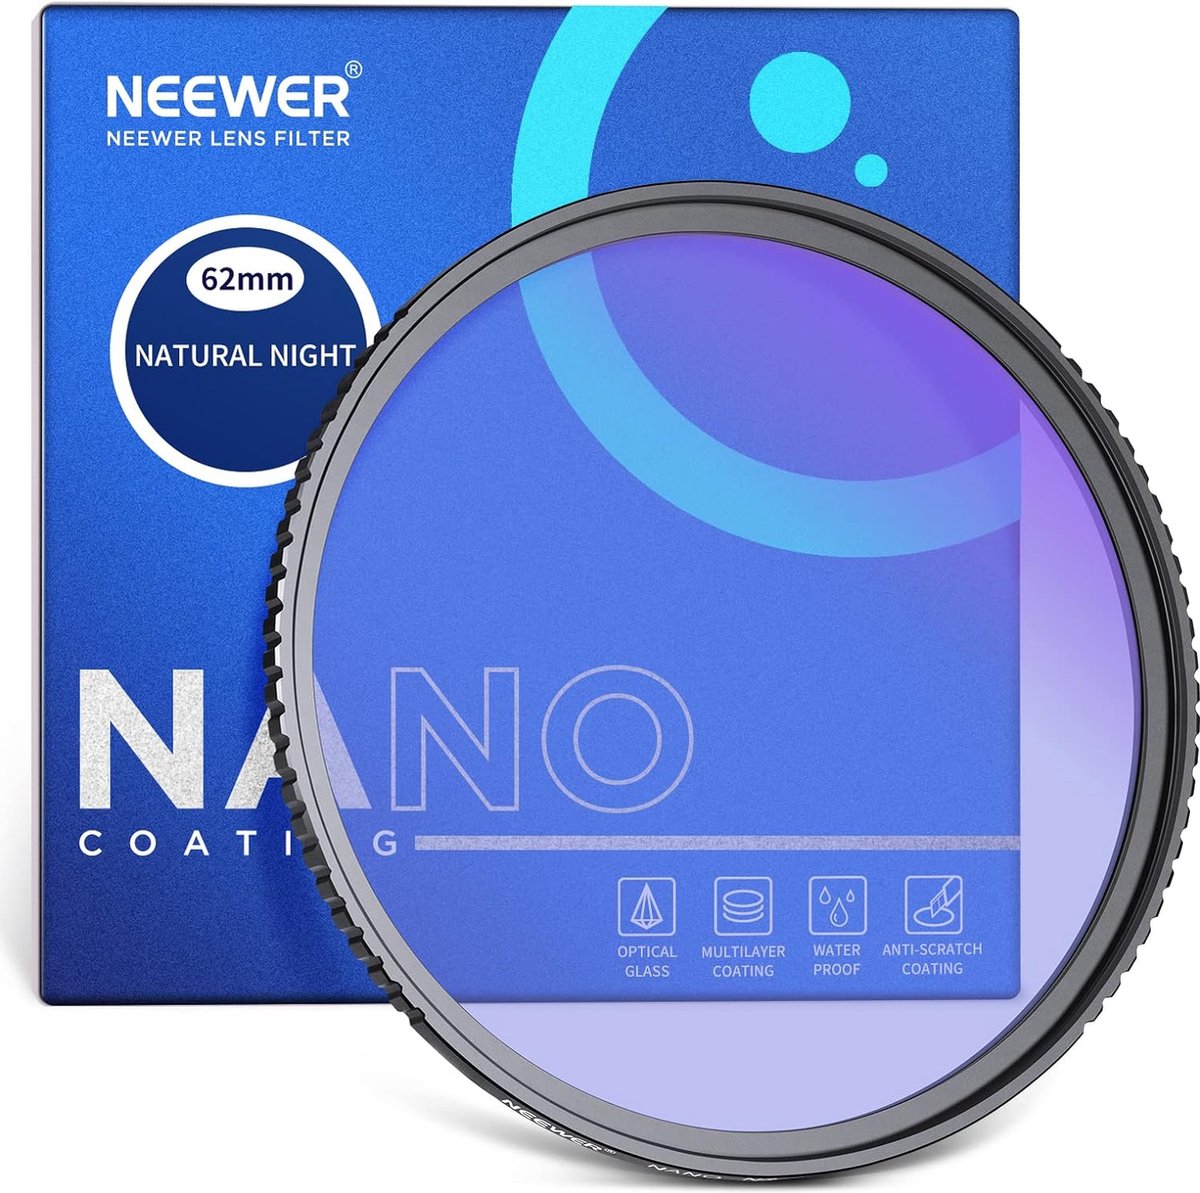 Neewer® - 62mm Nacht Lichtvervuilingsfilter met HD Neodymium Glasconstructie - Natuurlijk Nachtfilter met Anti-Reflectie en Anti-Vingerafdruk Multicoating voor Nachthemel Fotografie -